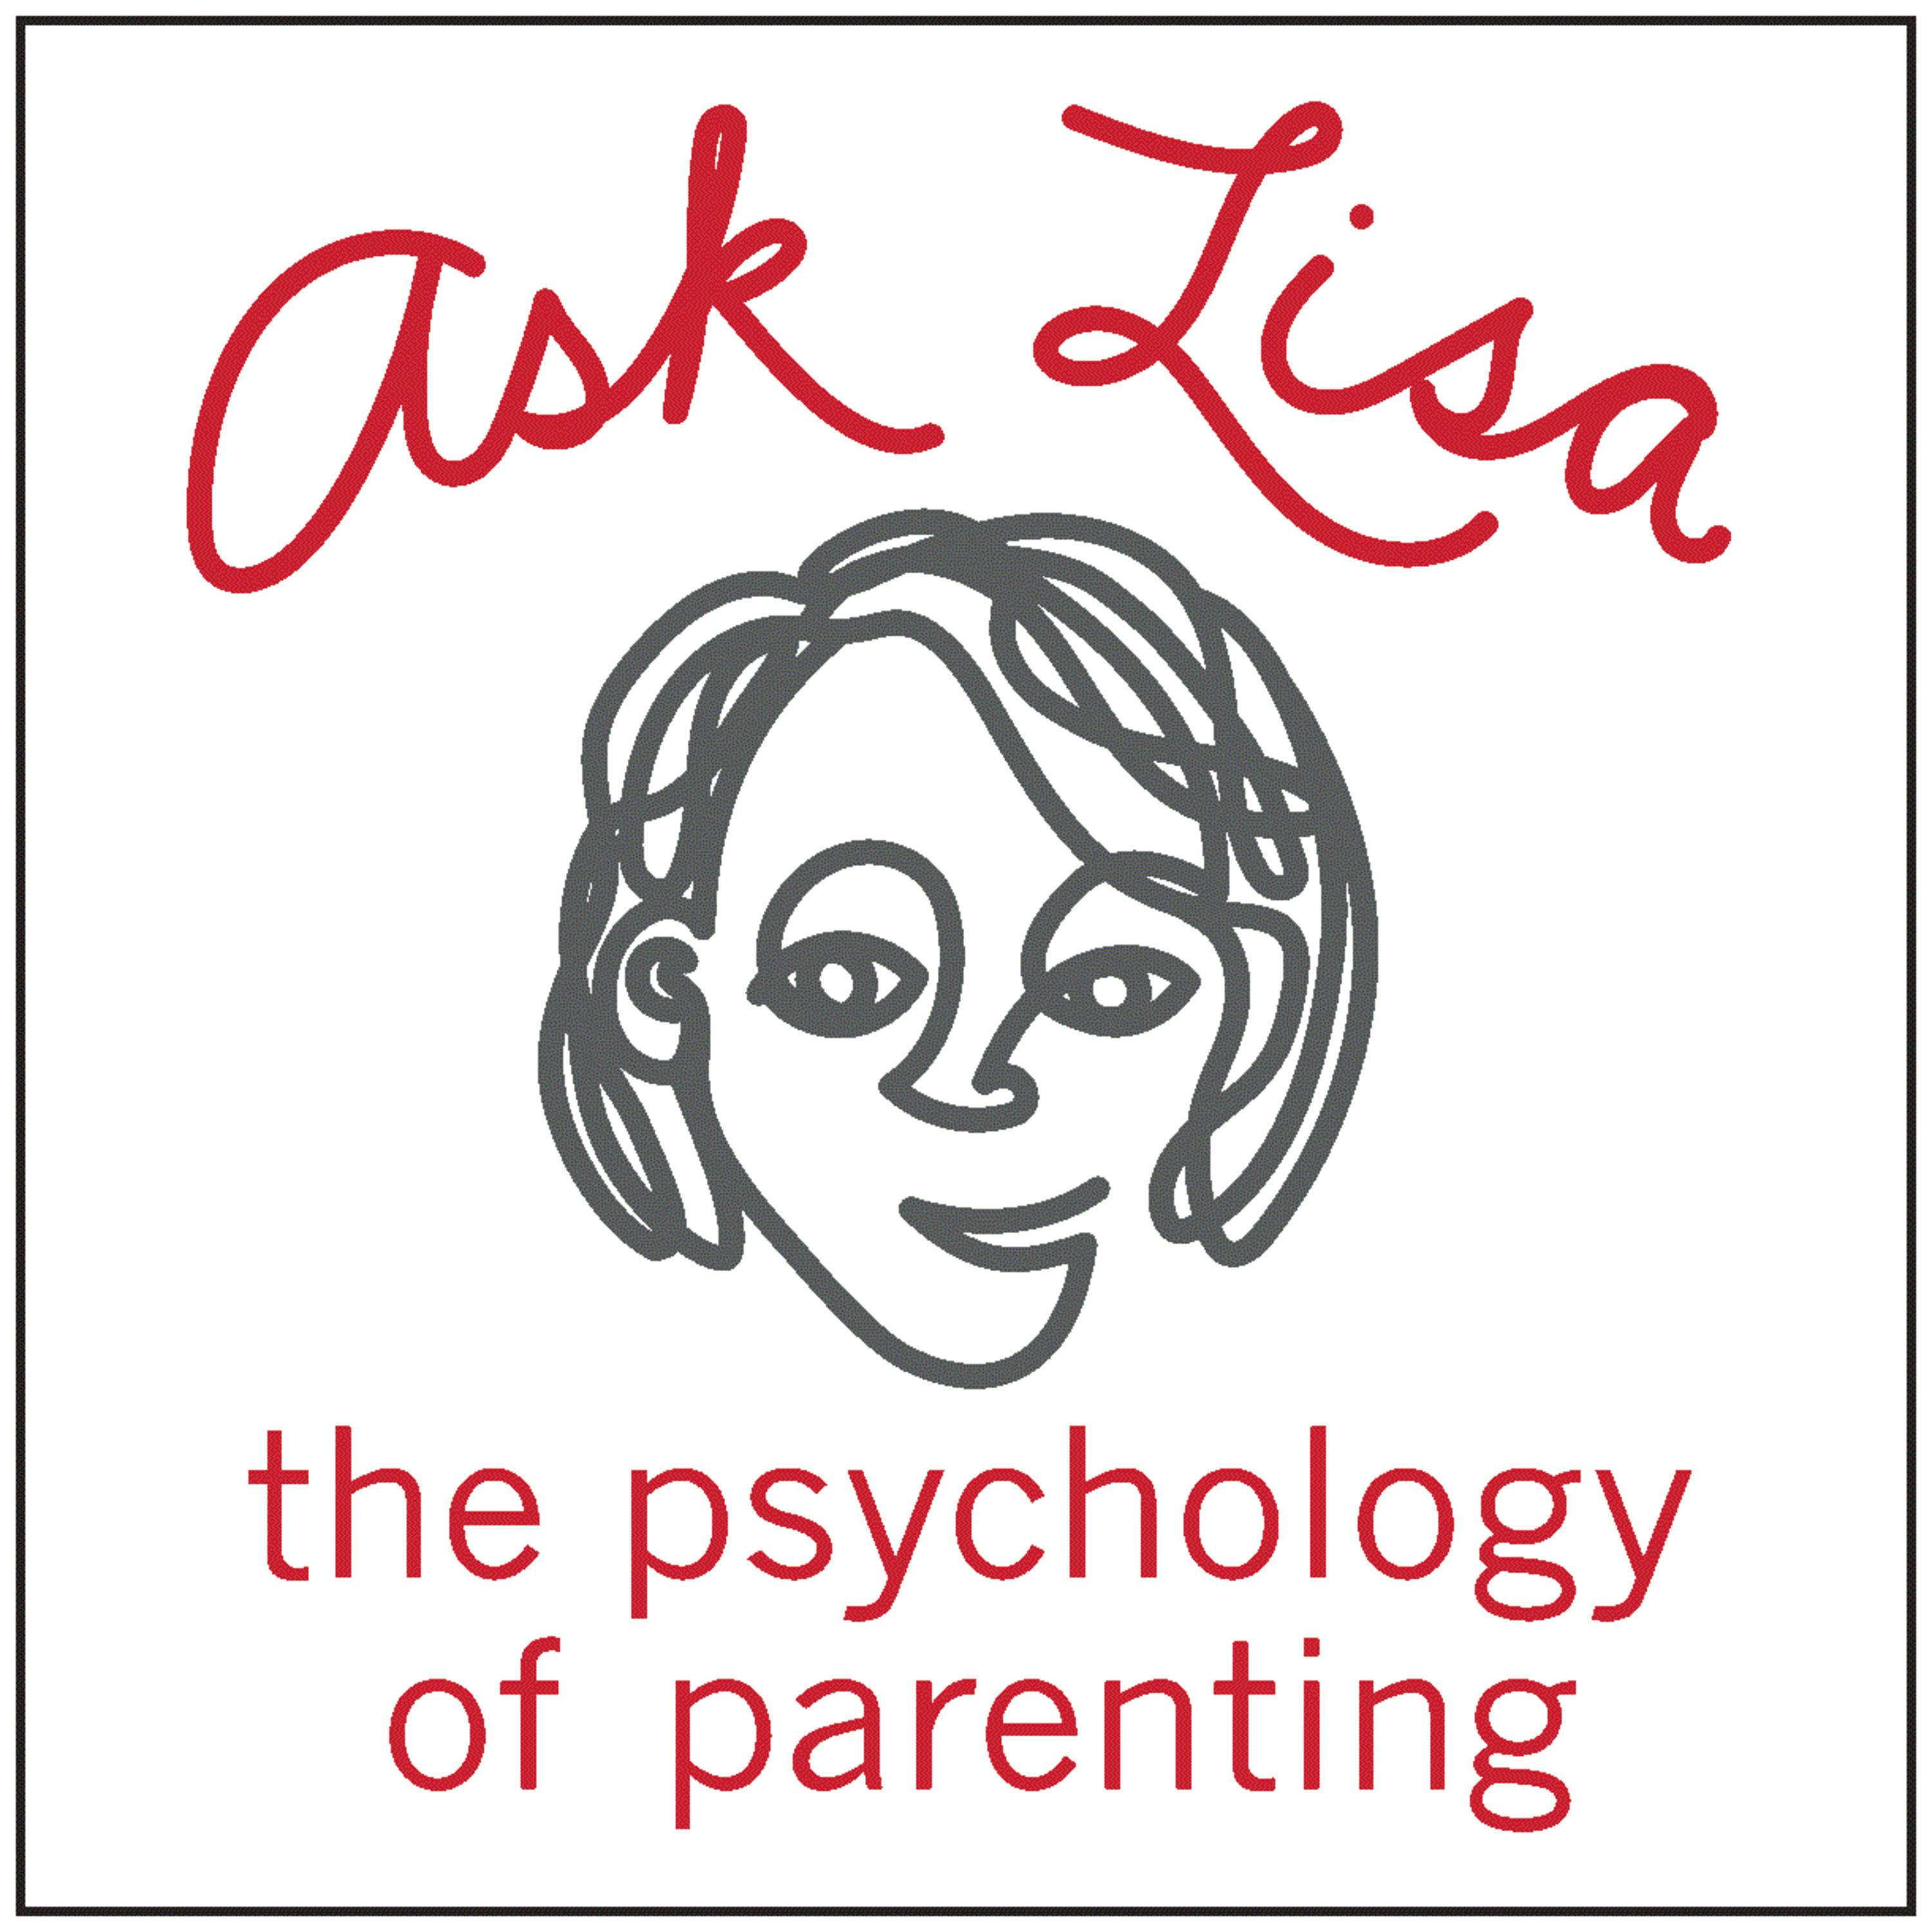 64: How Do I Build My Kids' Confidence and Self-Esteem?